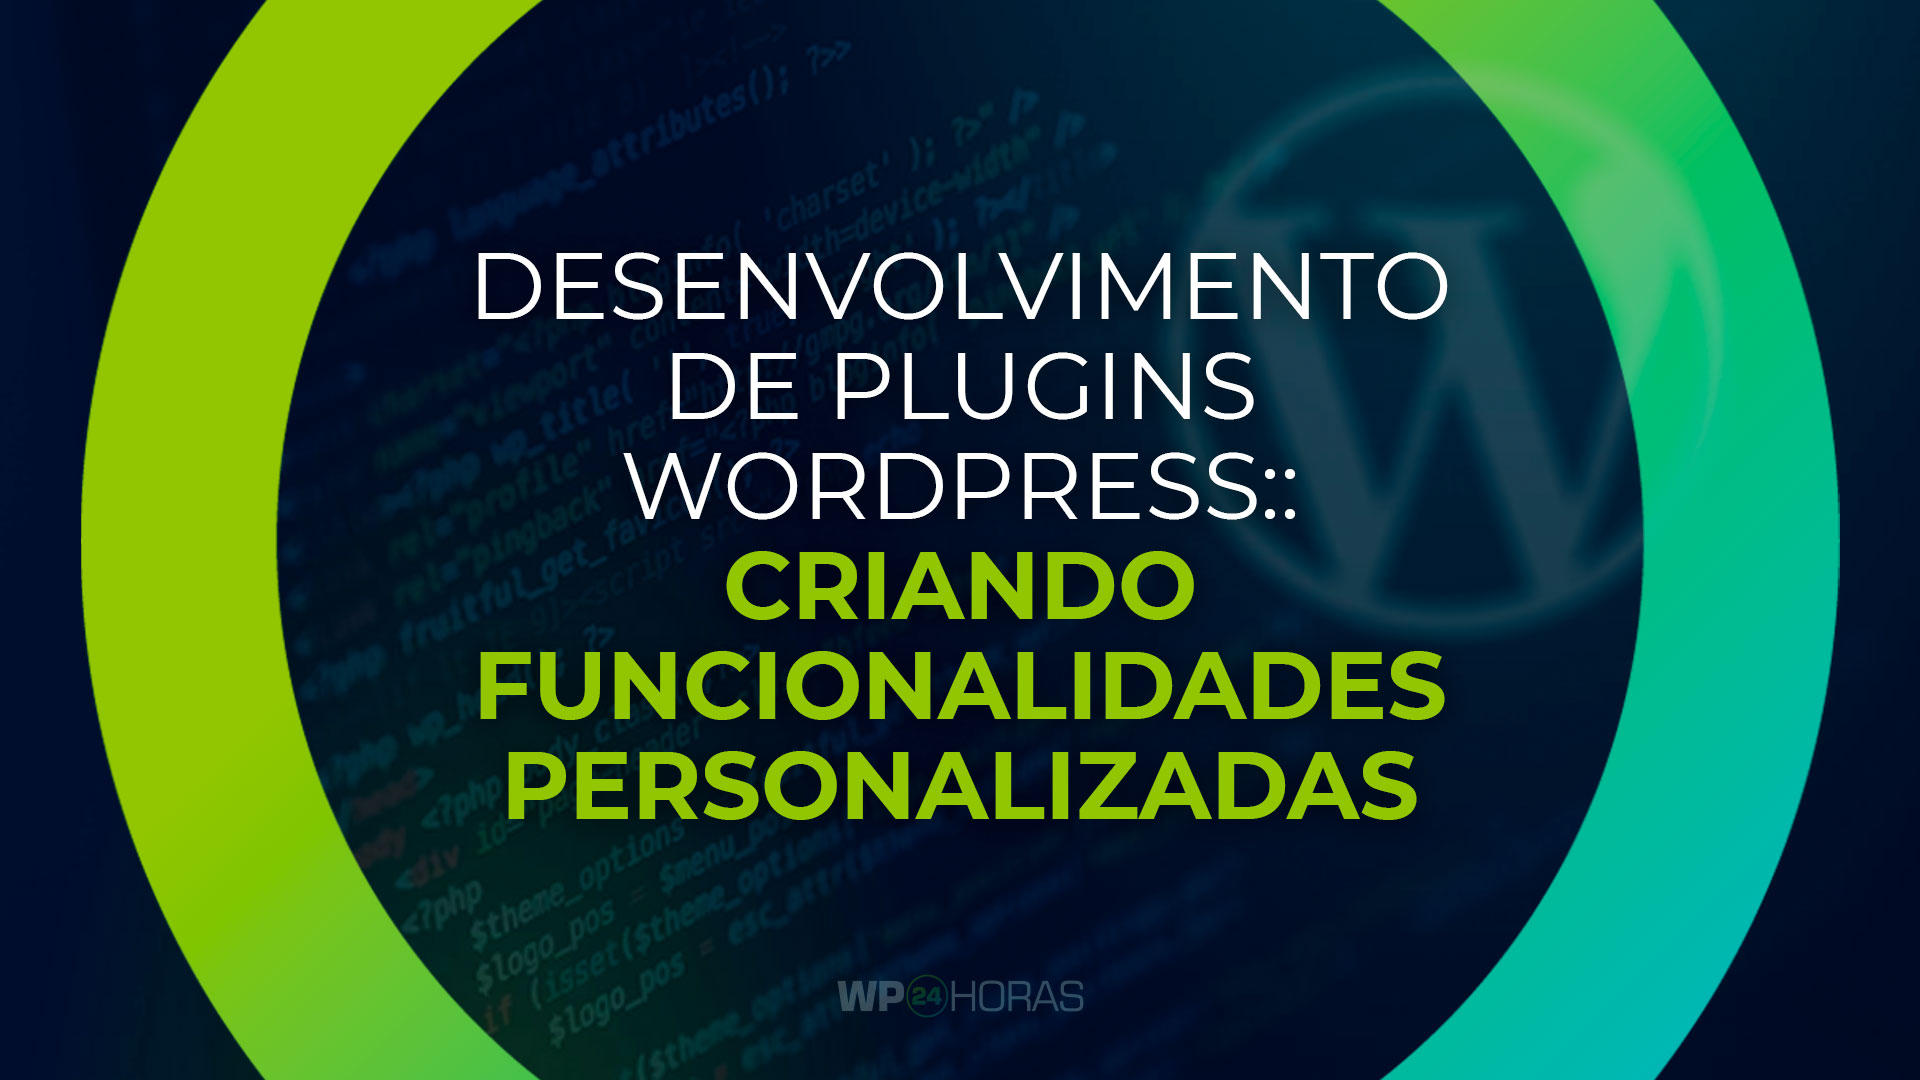 Desenvolvimento de Plugins WordPress: Criando Funcionalidades Personalizadas